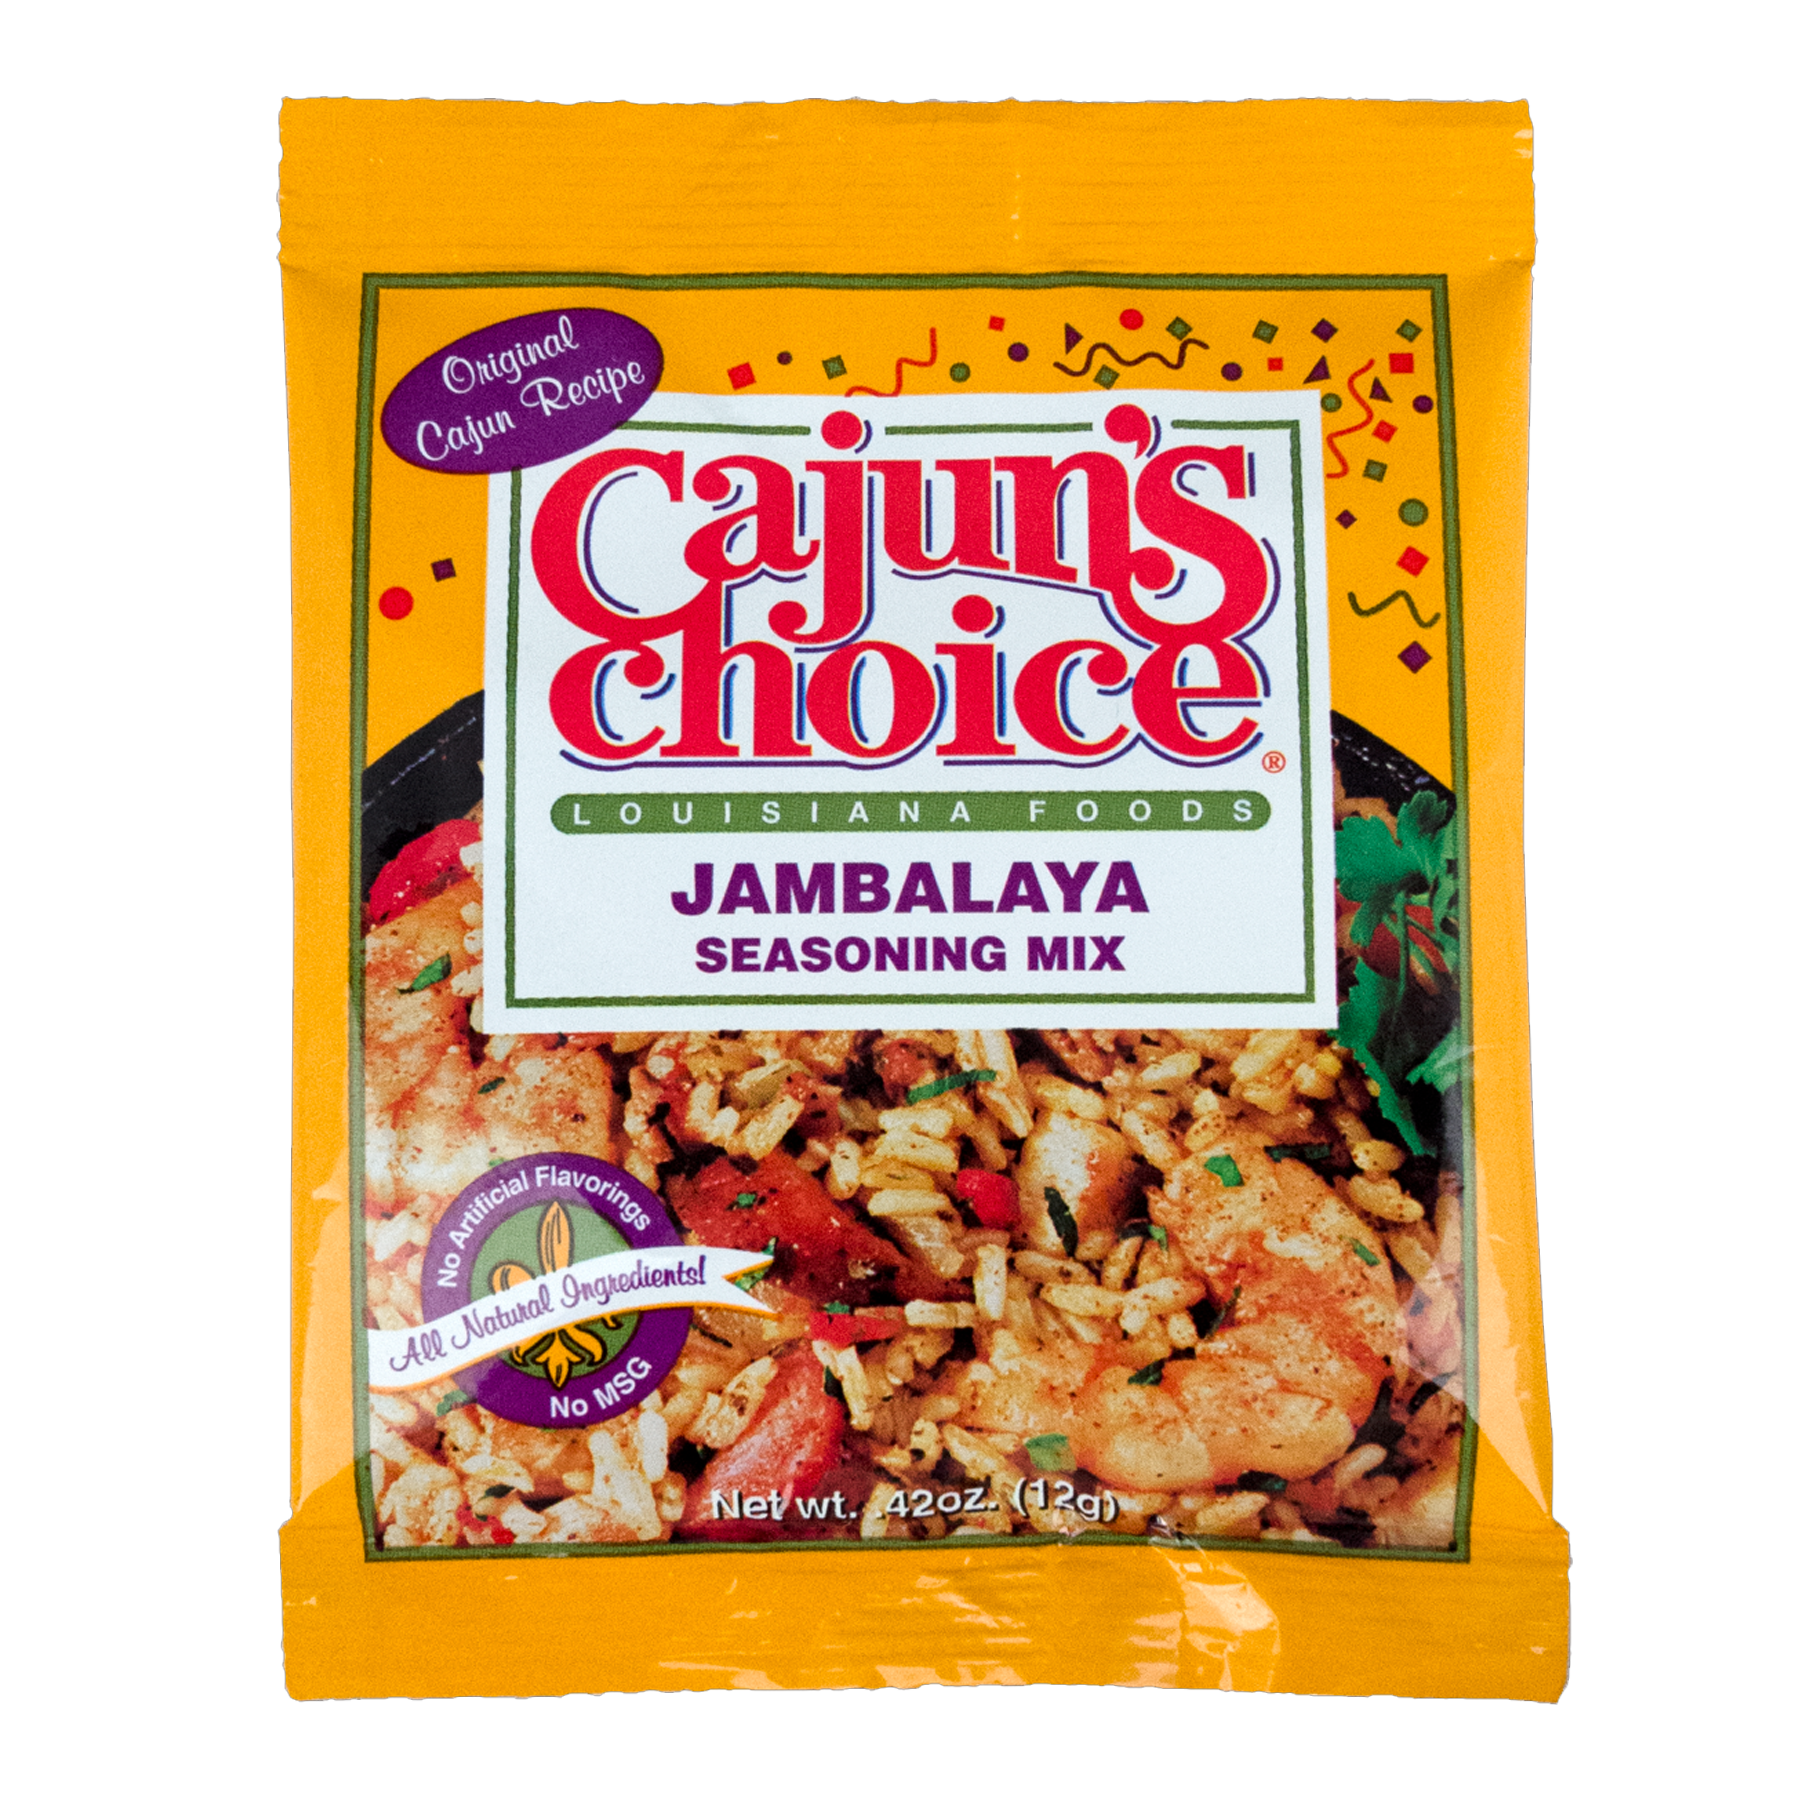 Cajuns Choice Louisiana Foods Seasoning Mix, Cajun Shrimp - 0.3 oz